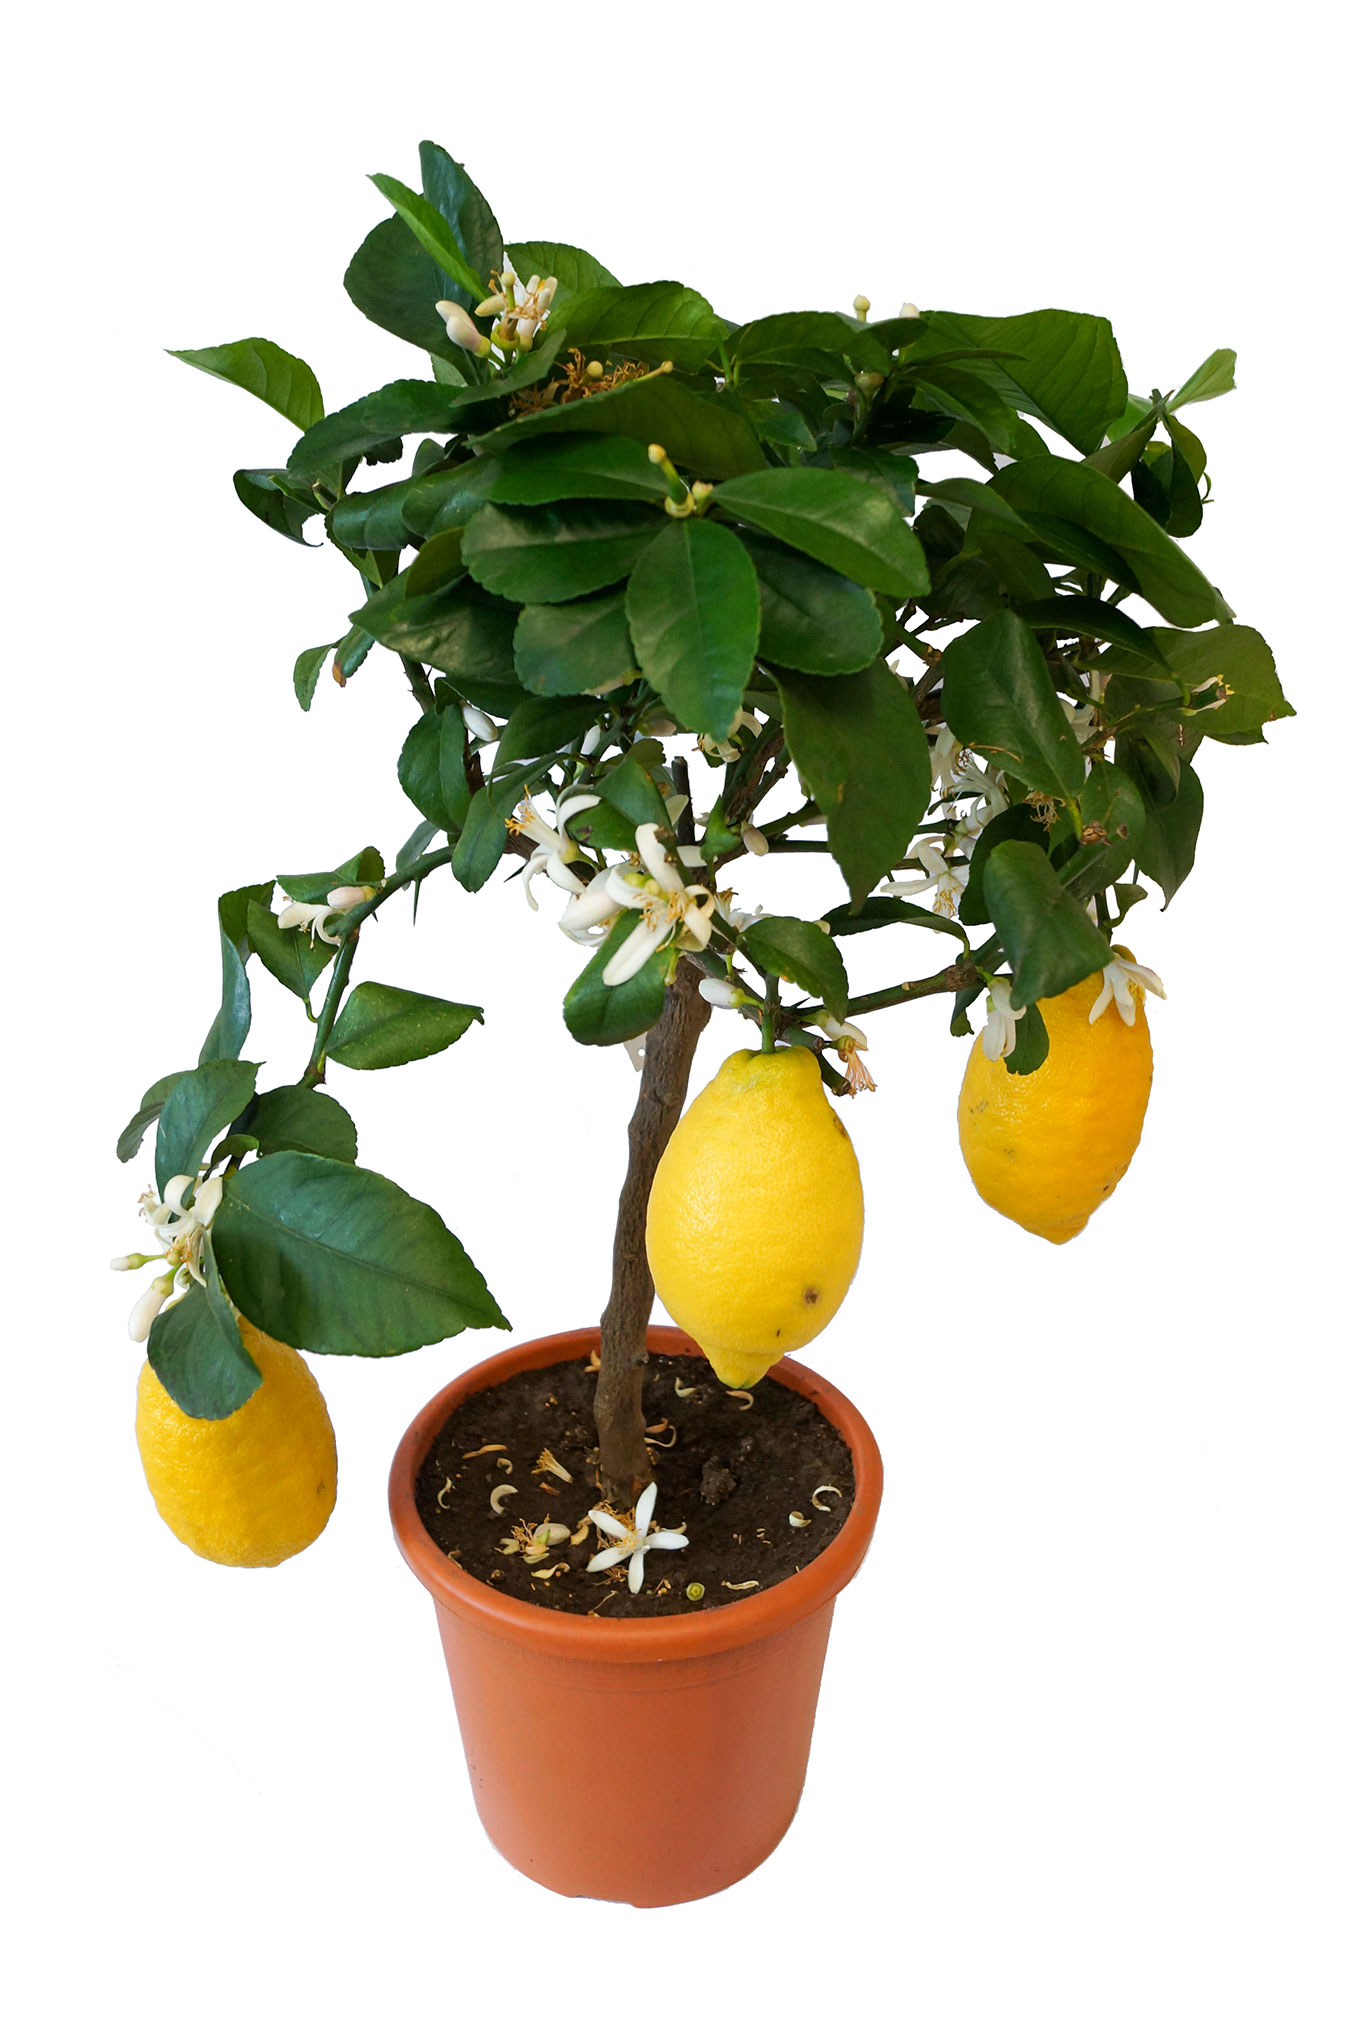 Zitrone   Citrus limon